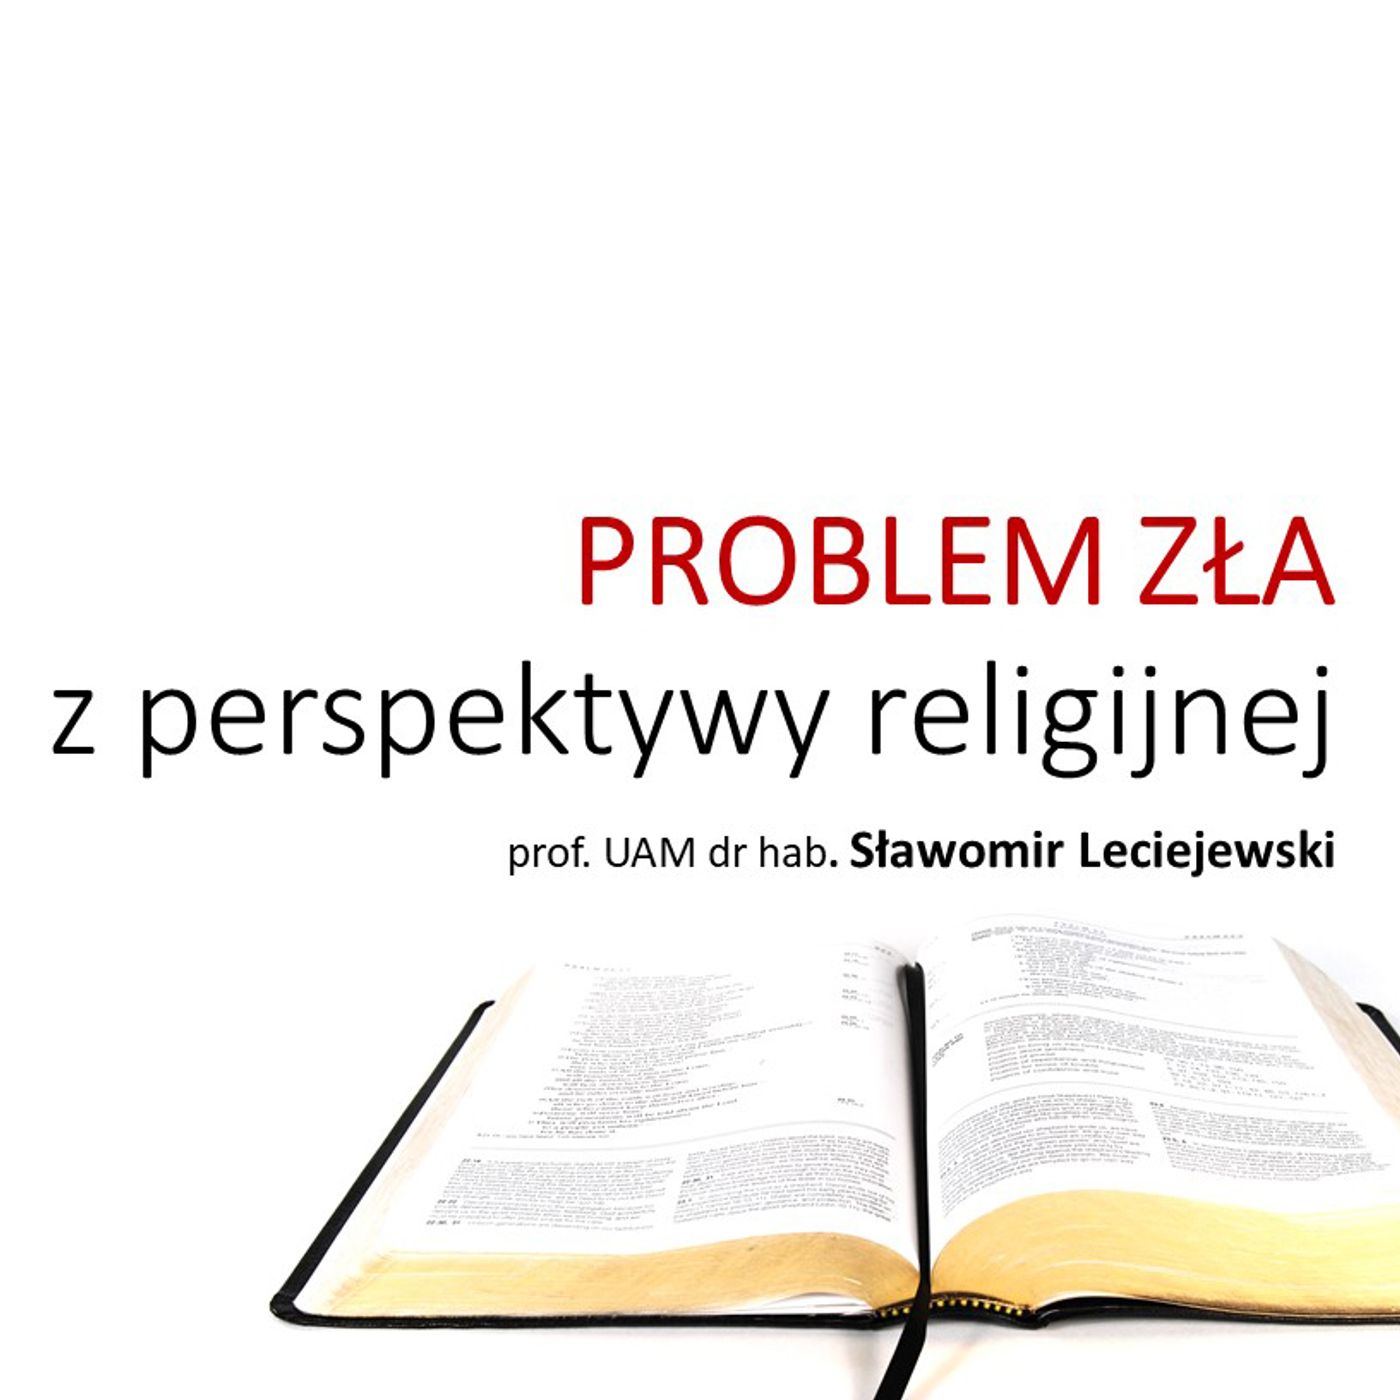 CZĘŚĆ 1 - Problem zła z perspektywy religijnej